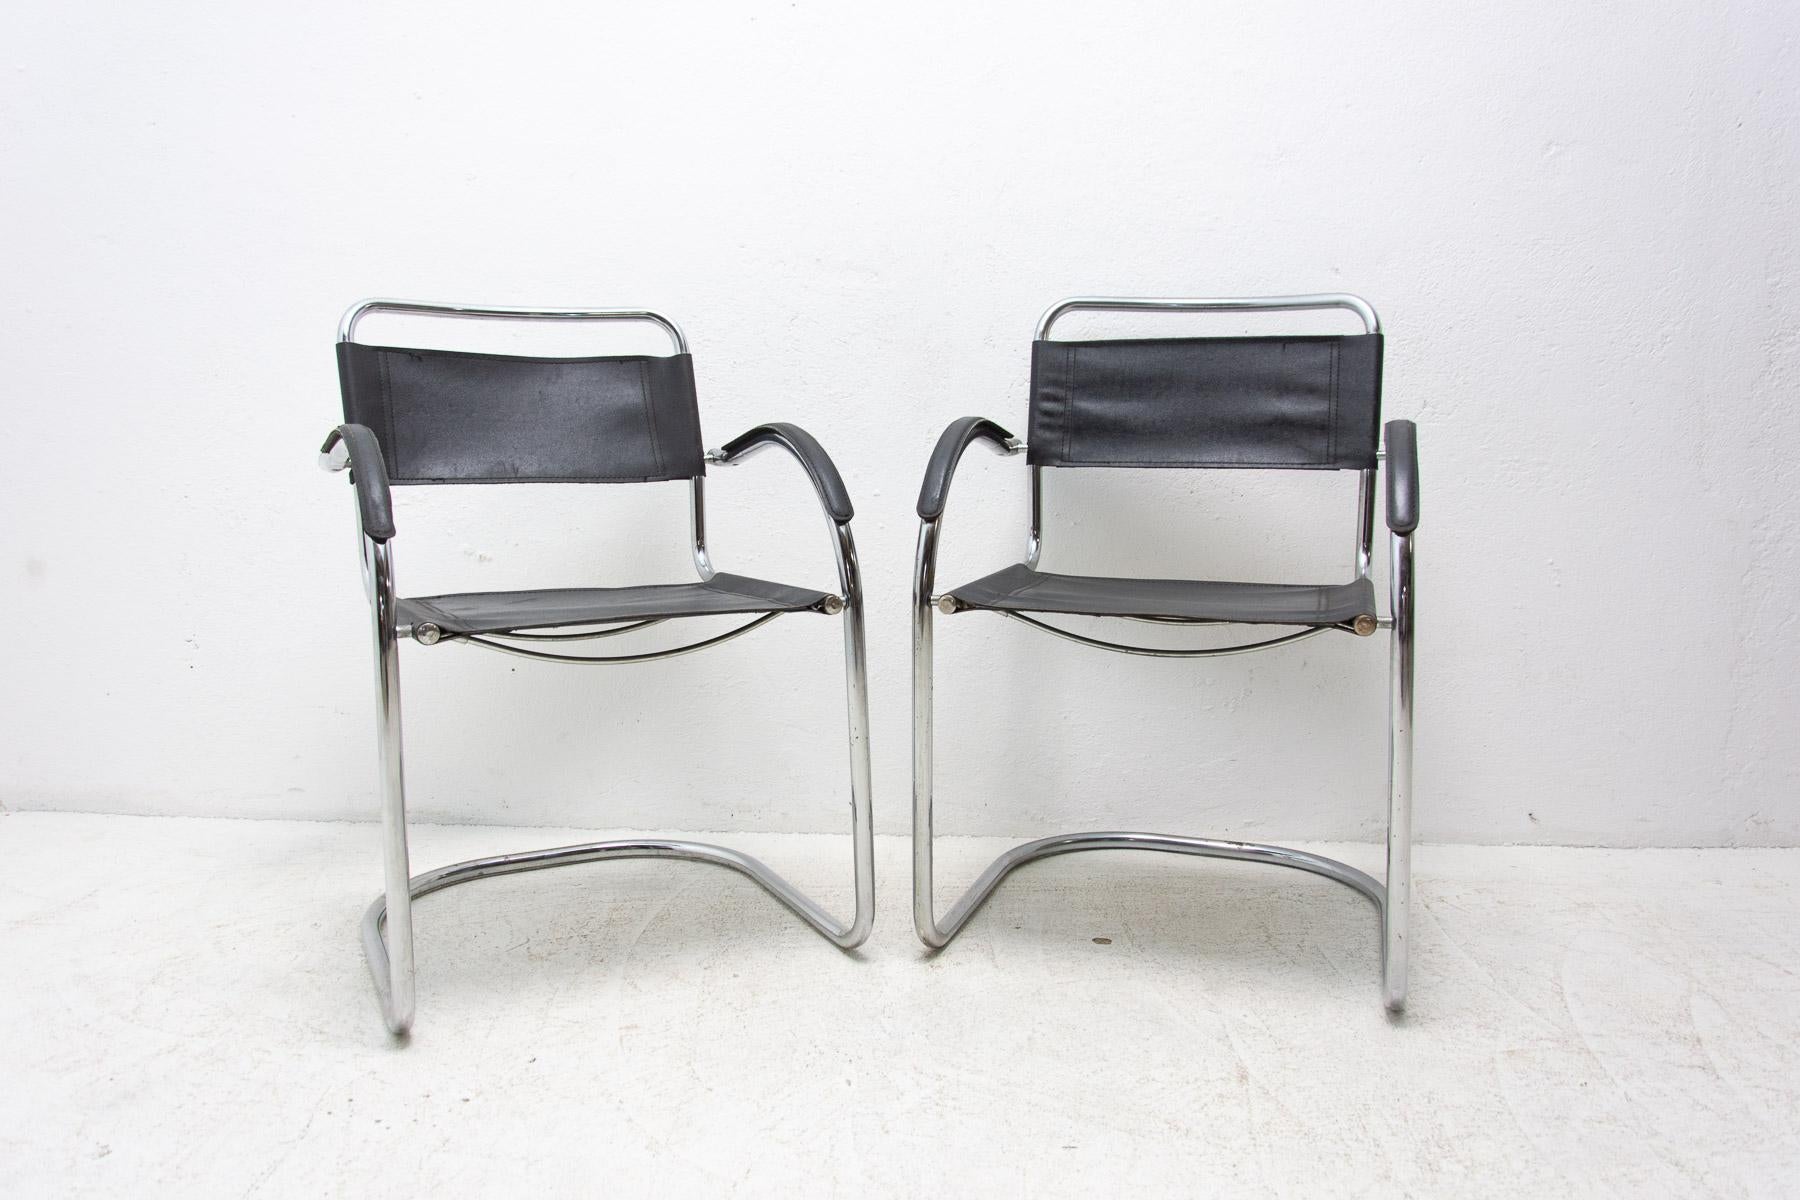 Paire de fauteuils Cantilever en tube d'acier. Fabriqué dans les années 1970. Matériau : cuir, chrome. En bonne condition Vintage, montrant des signes d'âge et d'utilisation. Le prix correspond à la paire.

Mesures : hauteur : 83 cm

largeur :